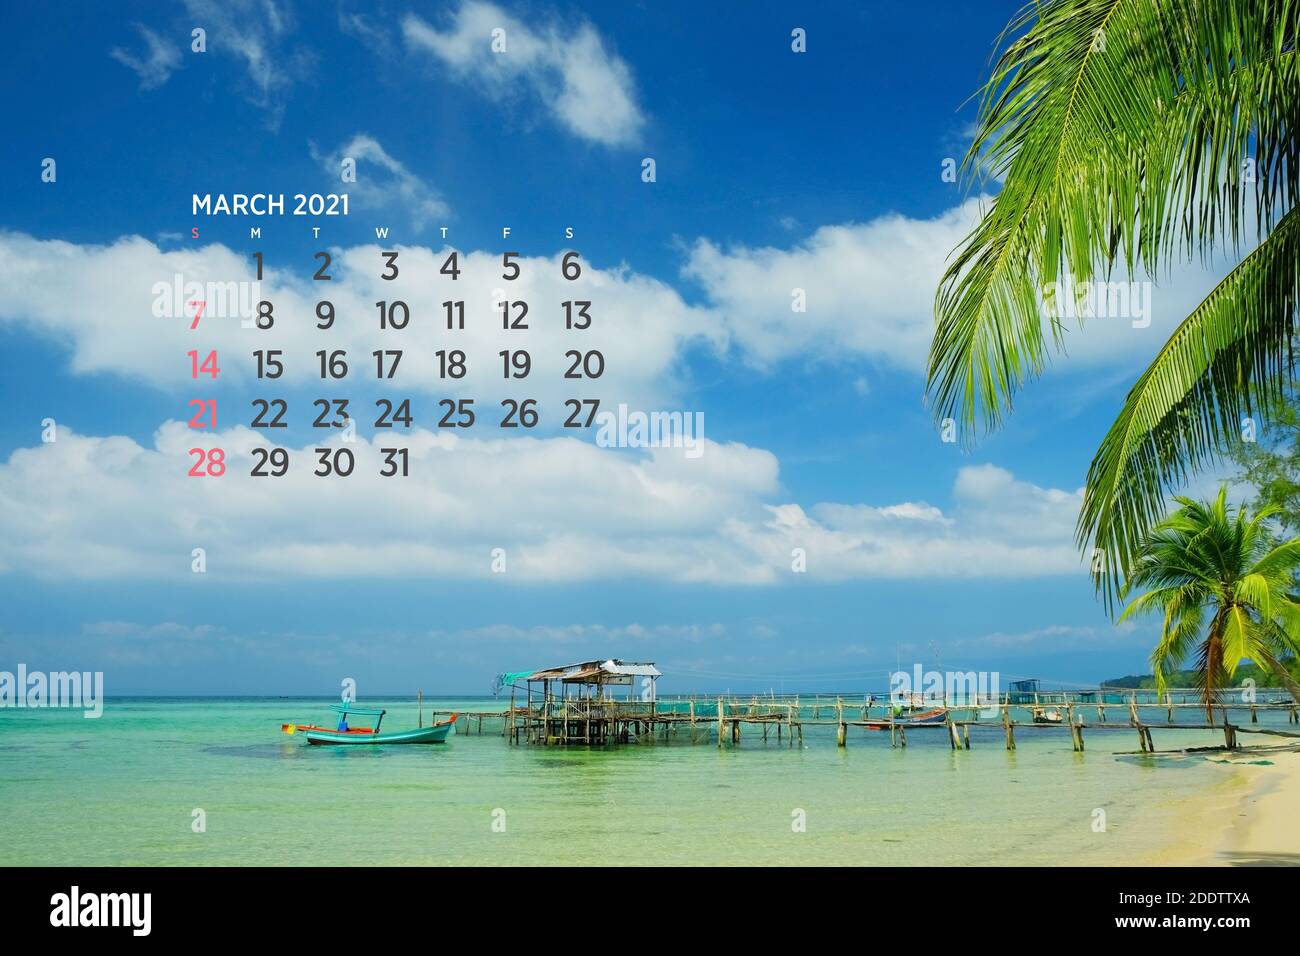 Calendar March 2021. Sea, ocean, beach, tropical, nature theme. A2. 60 x 40 cm. 15.75 x 23.62 inches Stock Photo